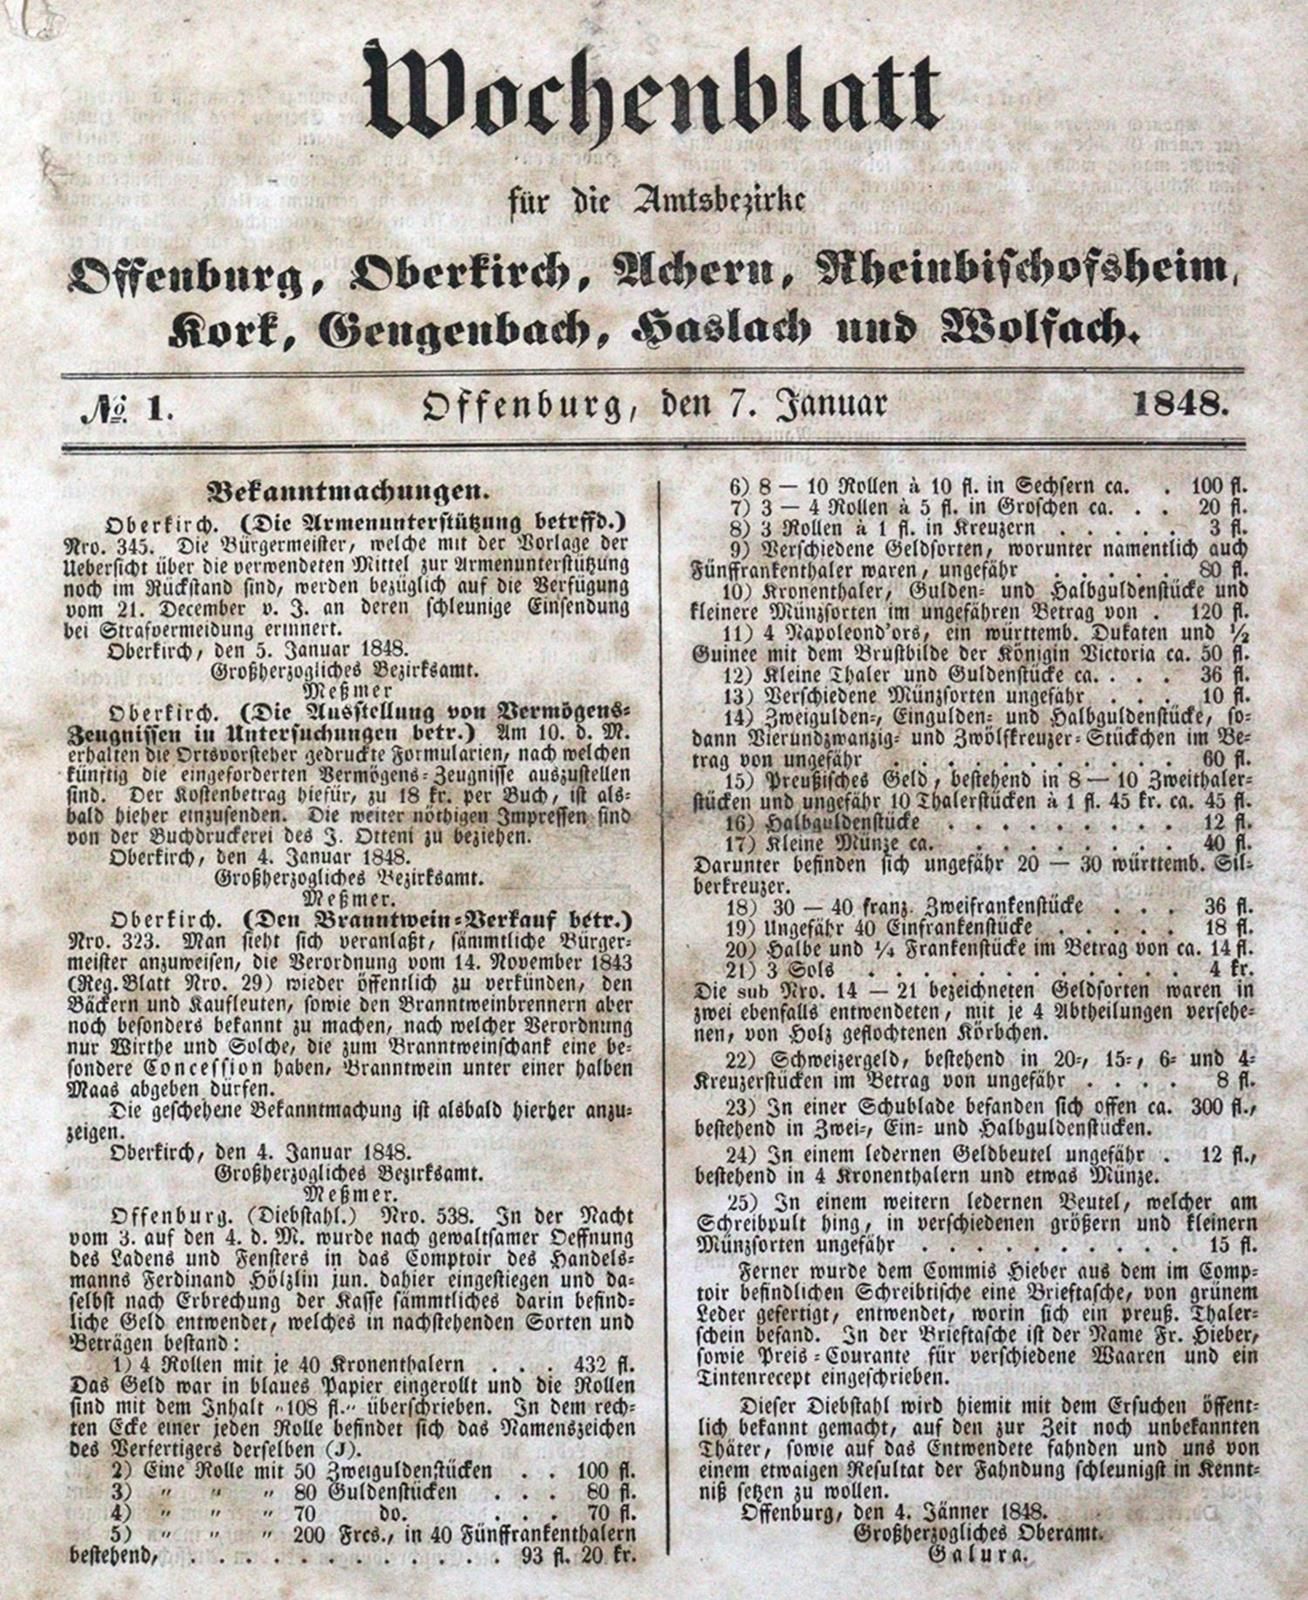 Wochenblatt for the districts of Offenburg, Oberkirch, Achern, Rheinbischofsheim&hellip;